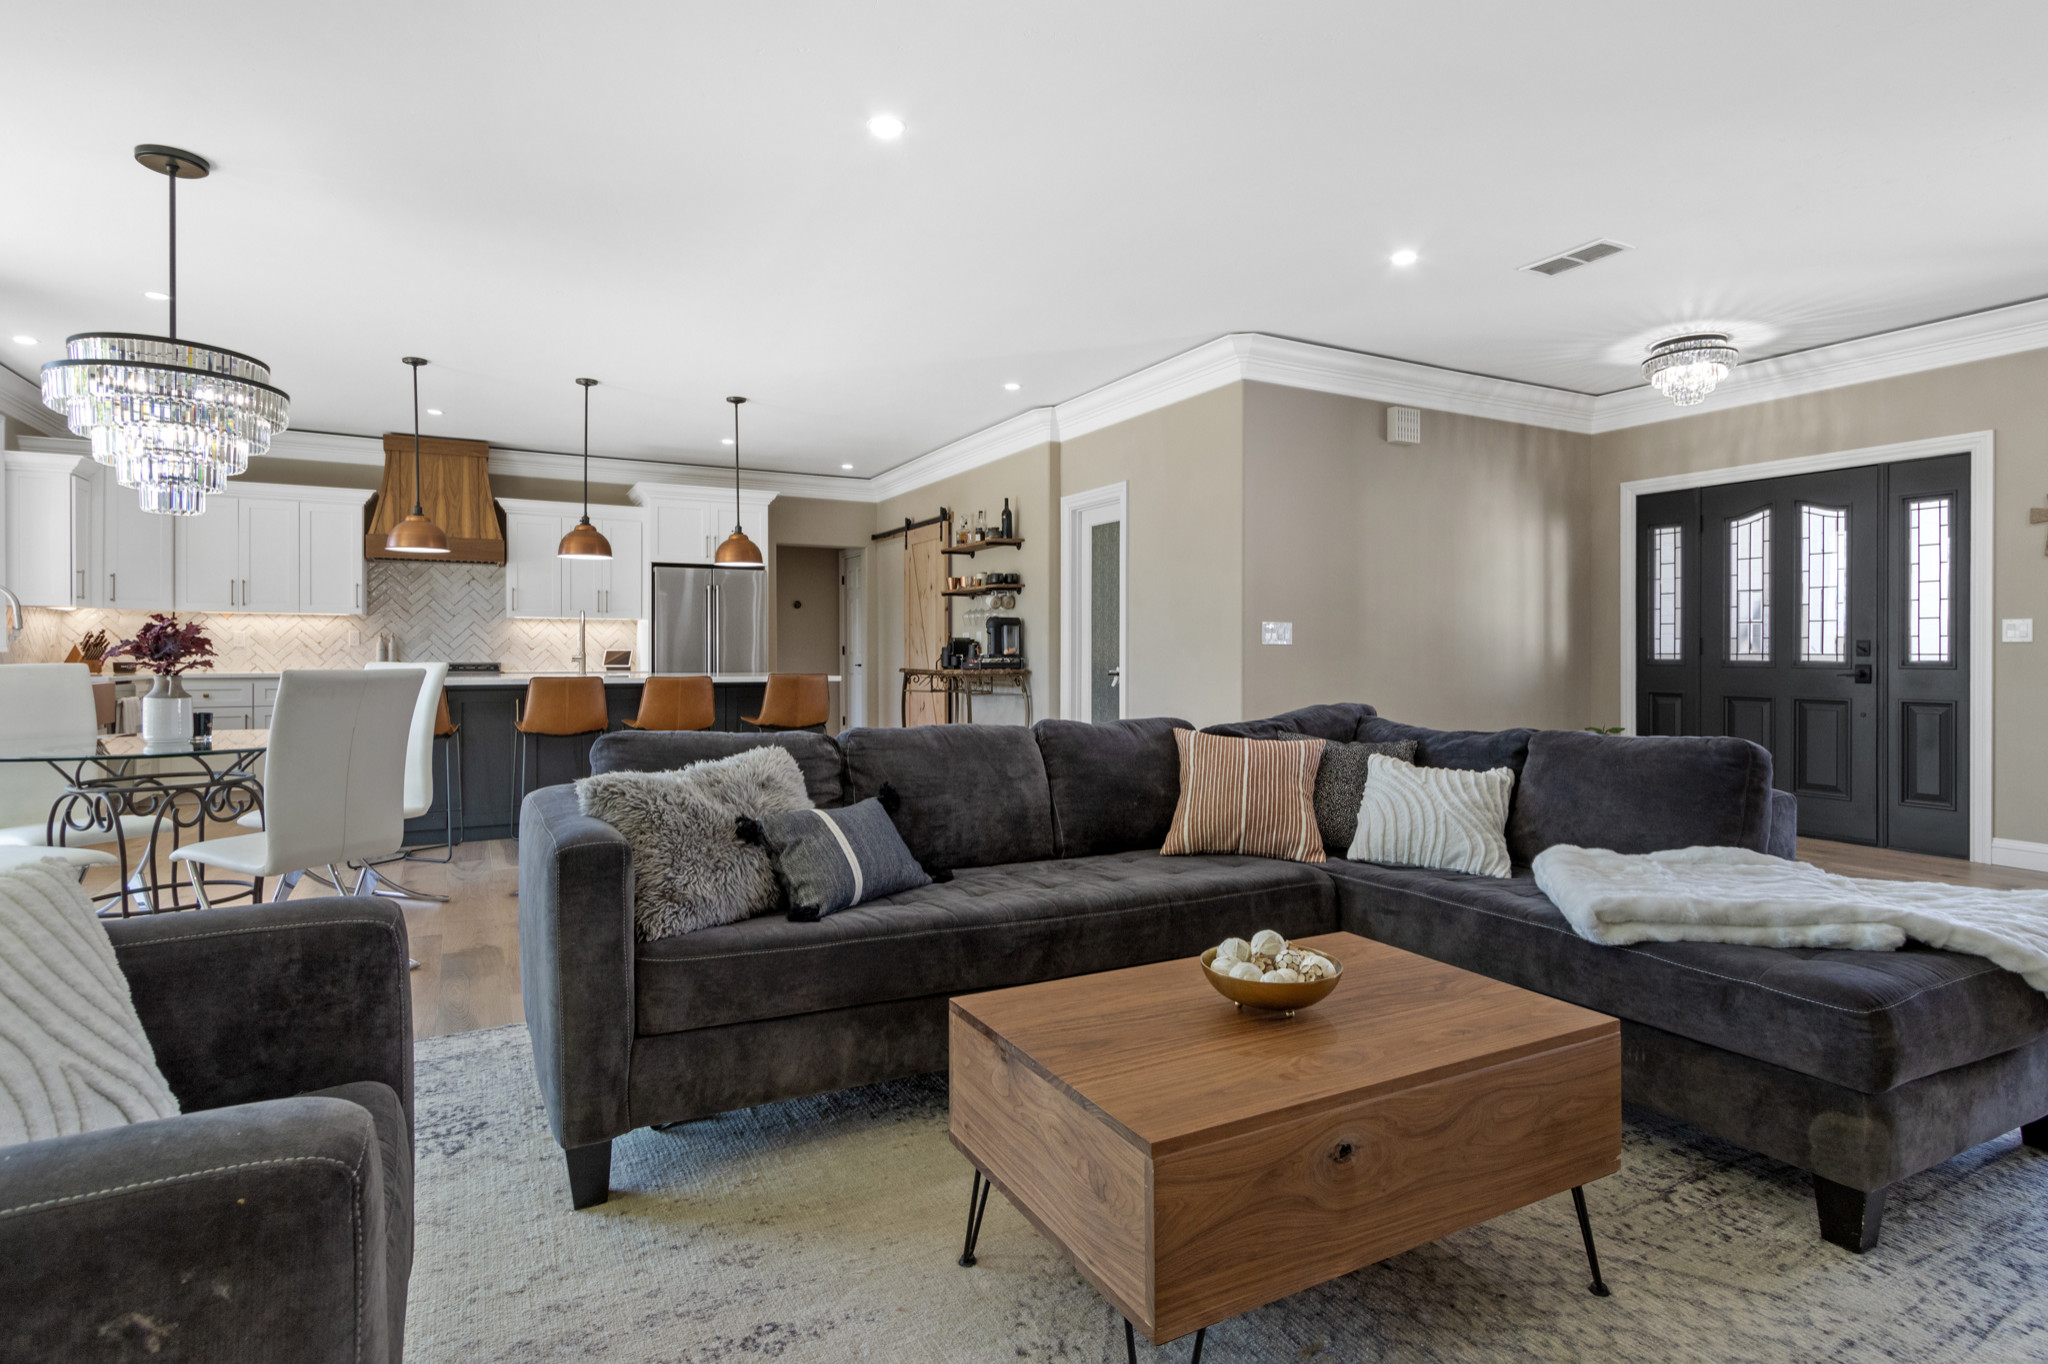 Boise | Transitional Full Home Remodel